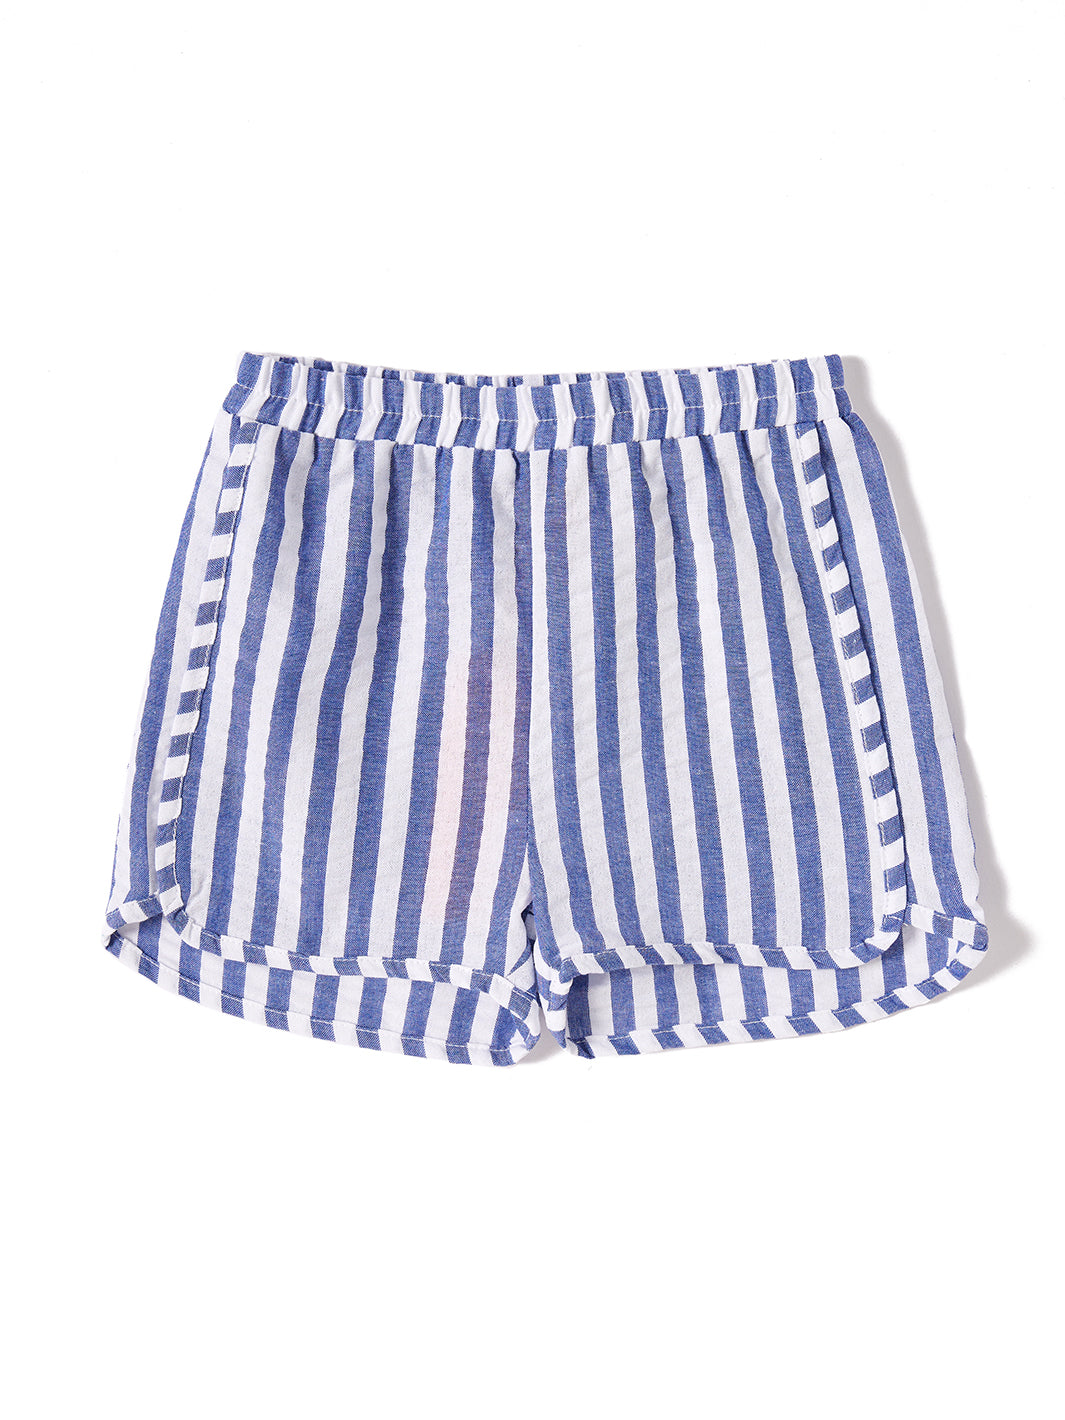 Short Striped Pants - White/Royal Blue